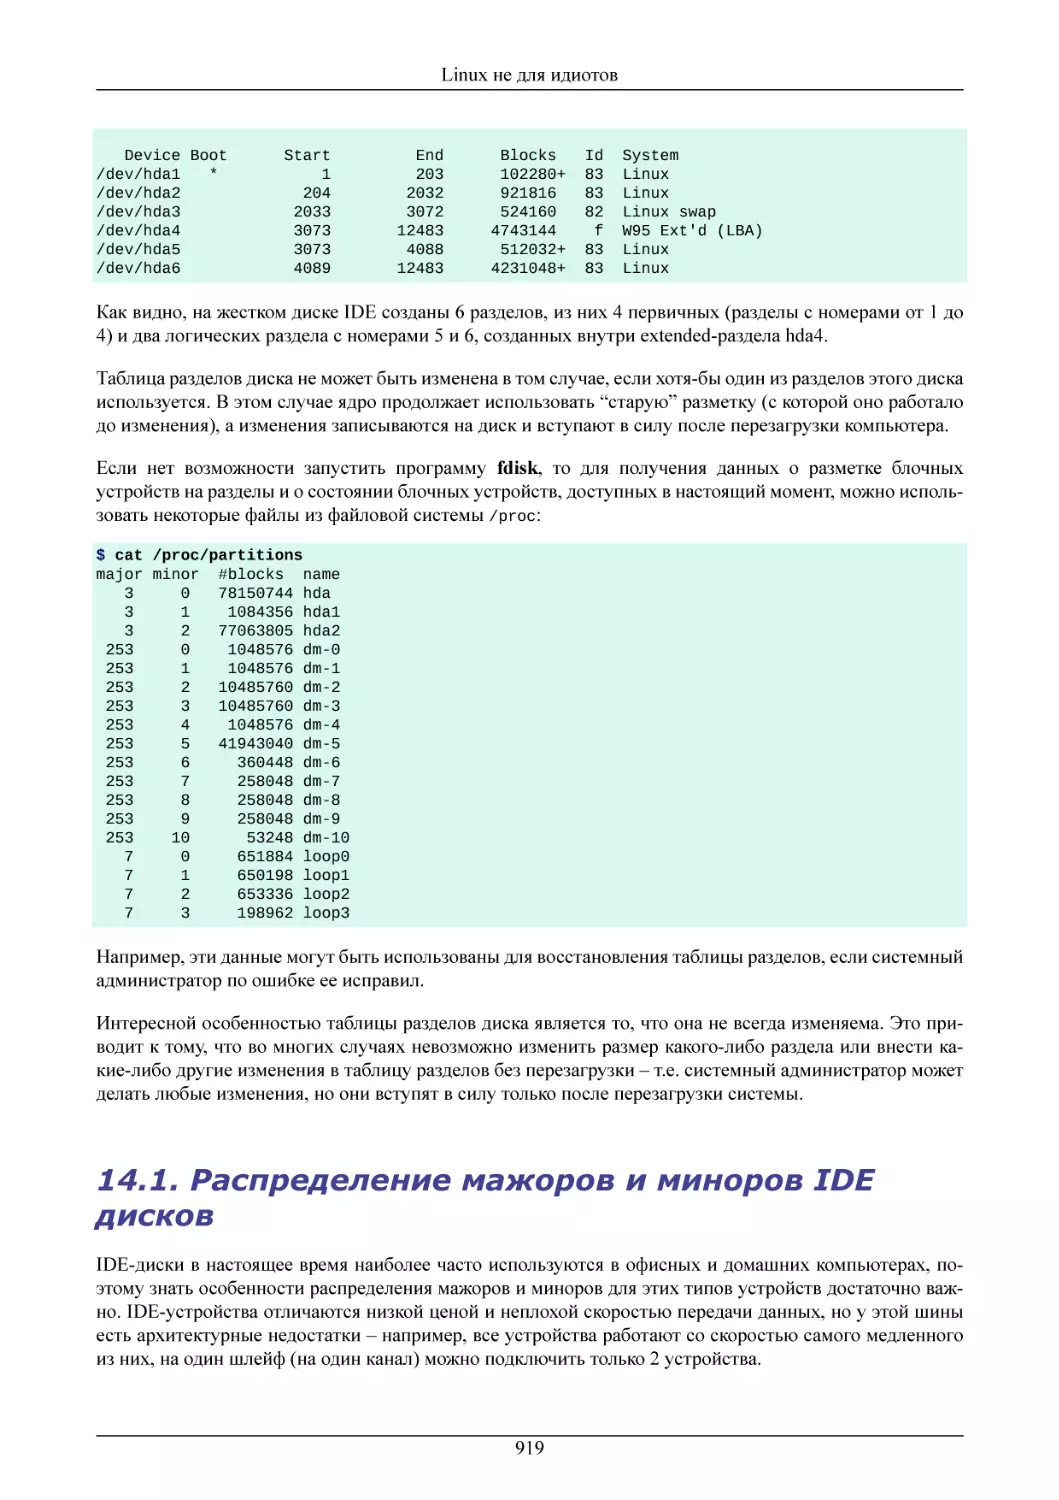 Распределение мажоров и миноров IDE дисков